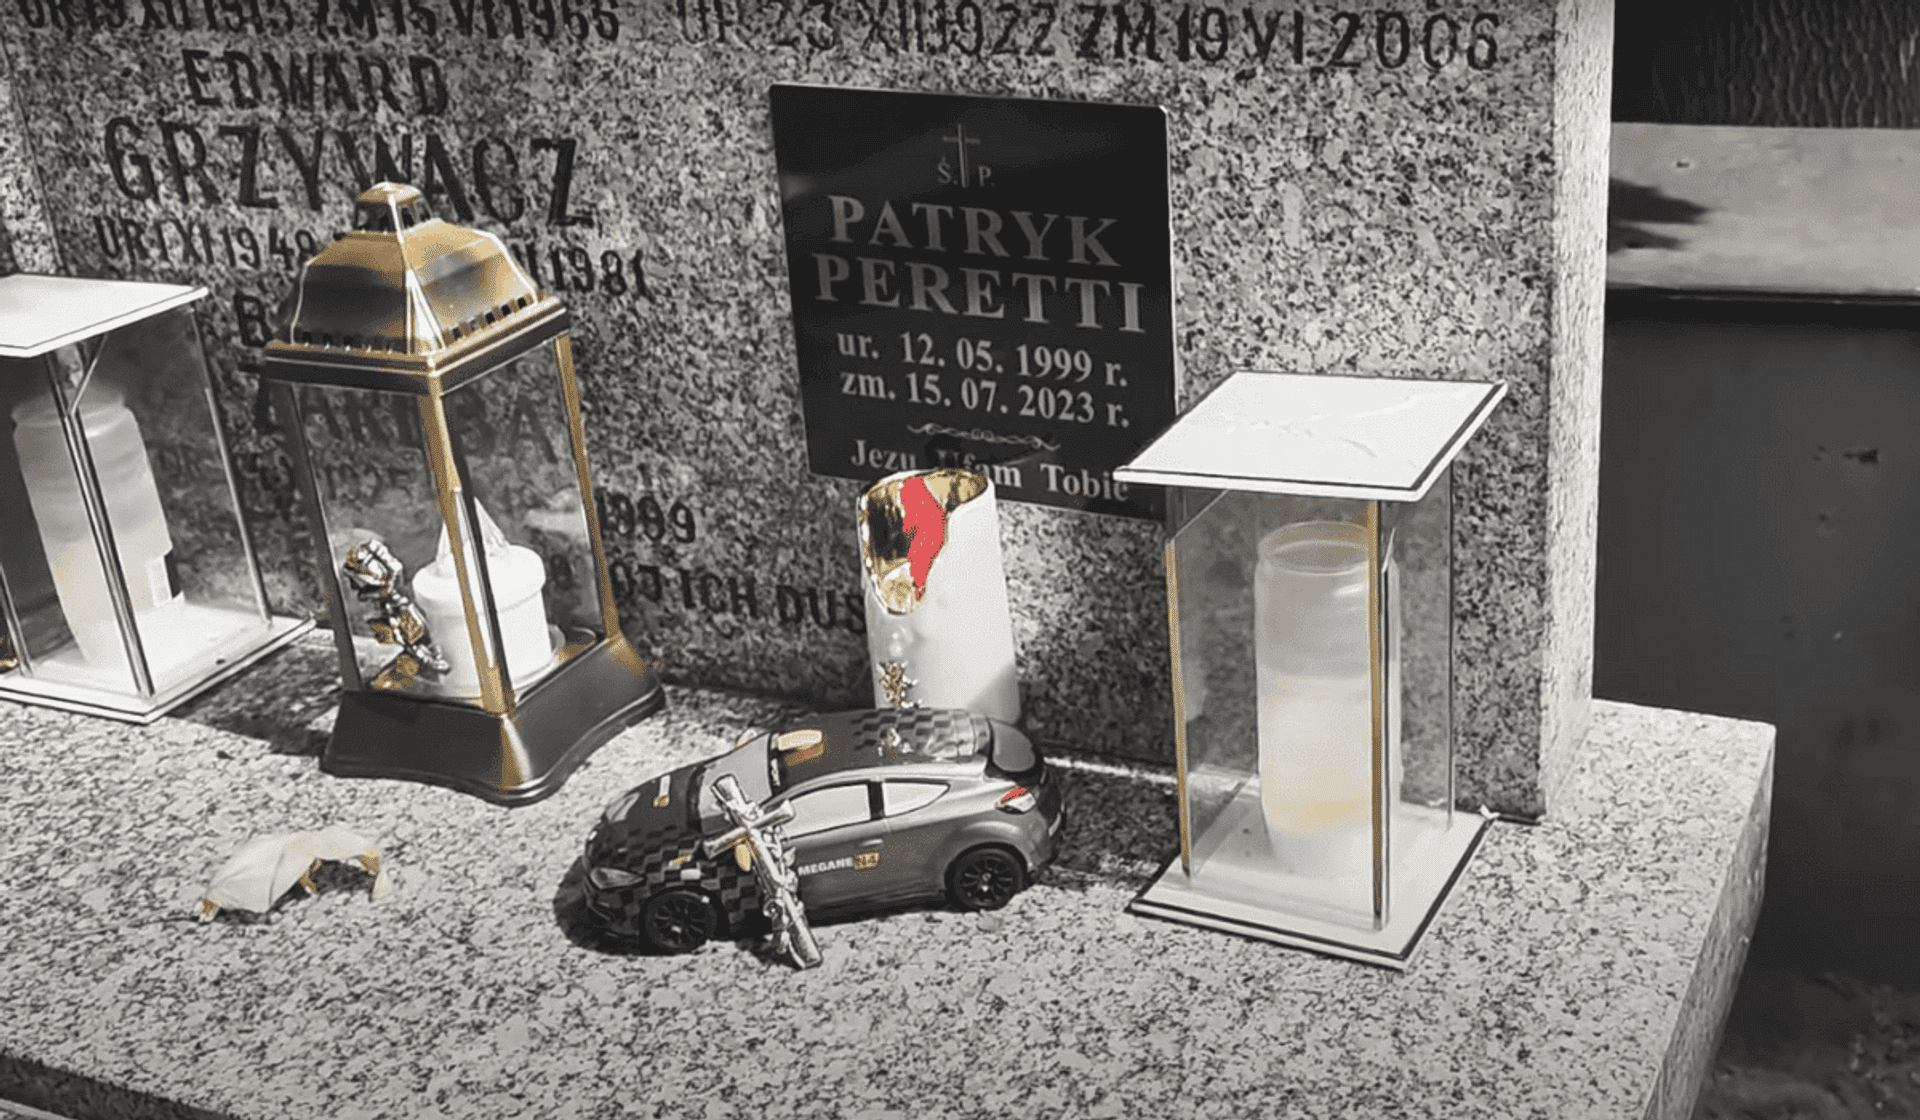 Grób Patryka Peretti w sierpniu 2023, przed remontem nagrobka, fot. YouTube @Goniec